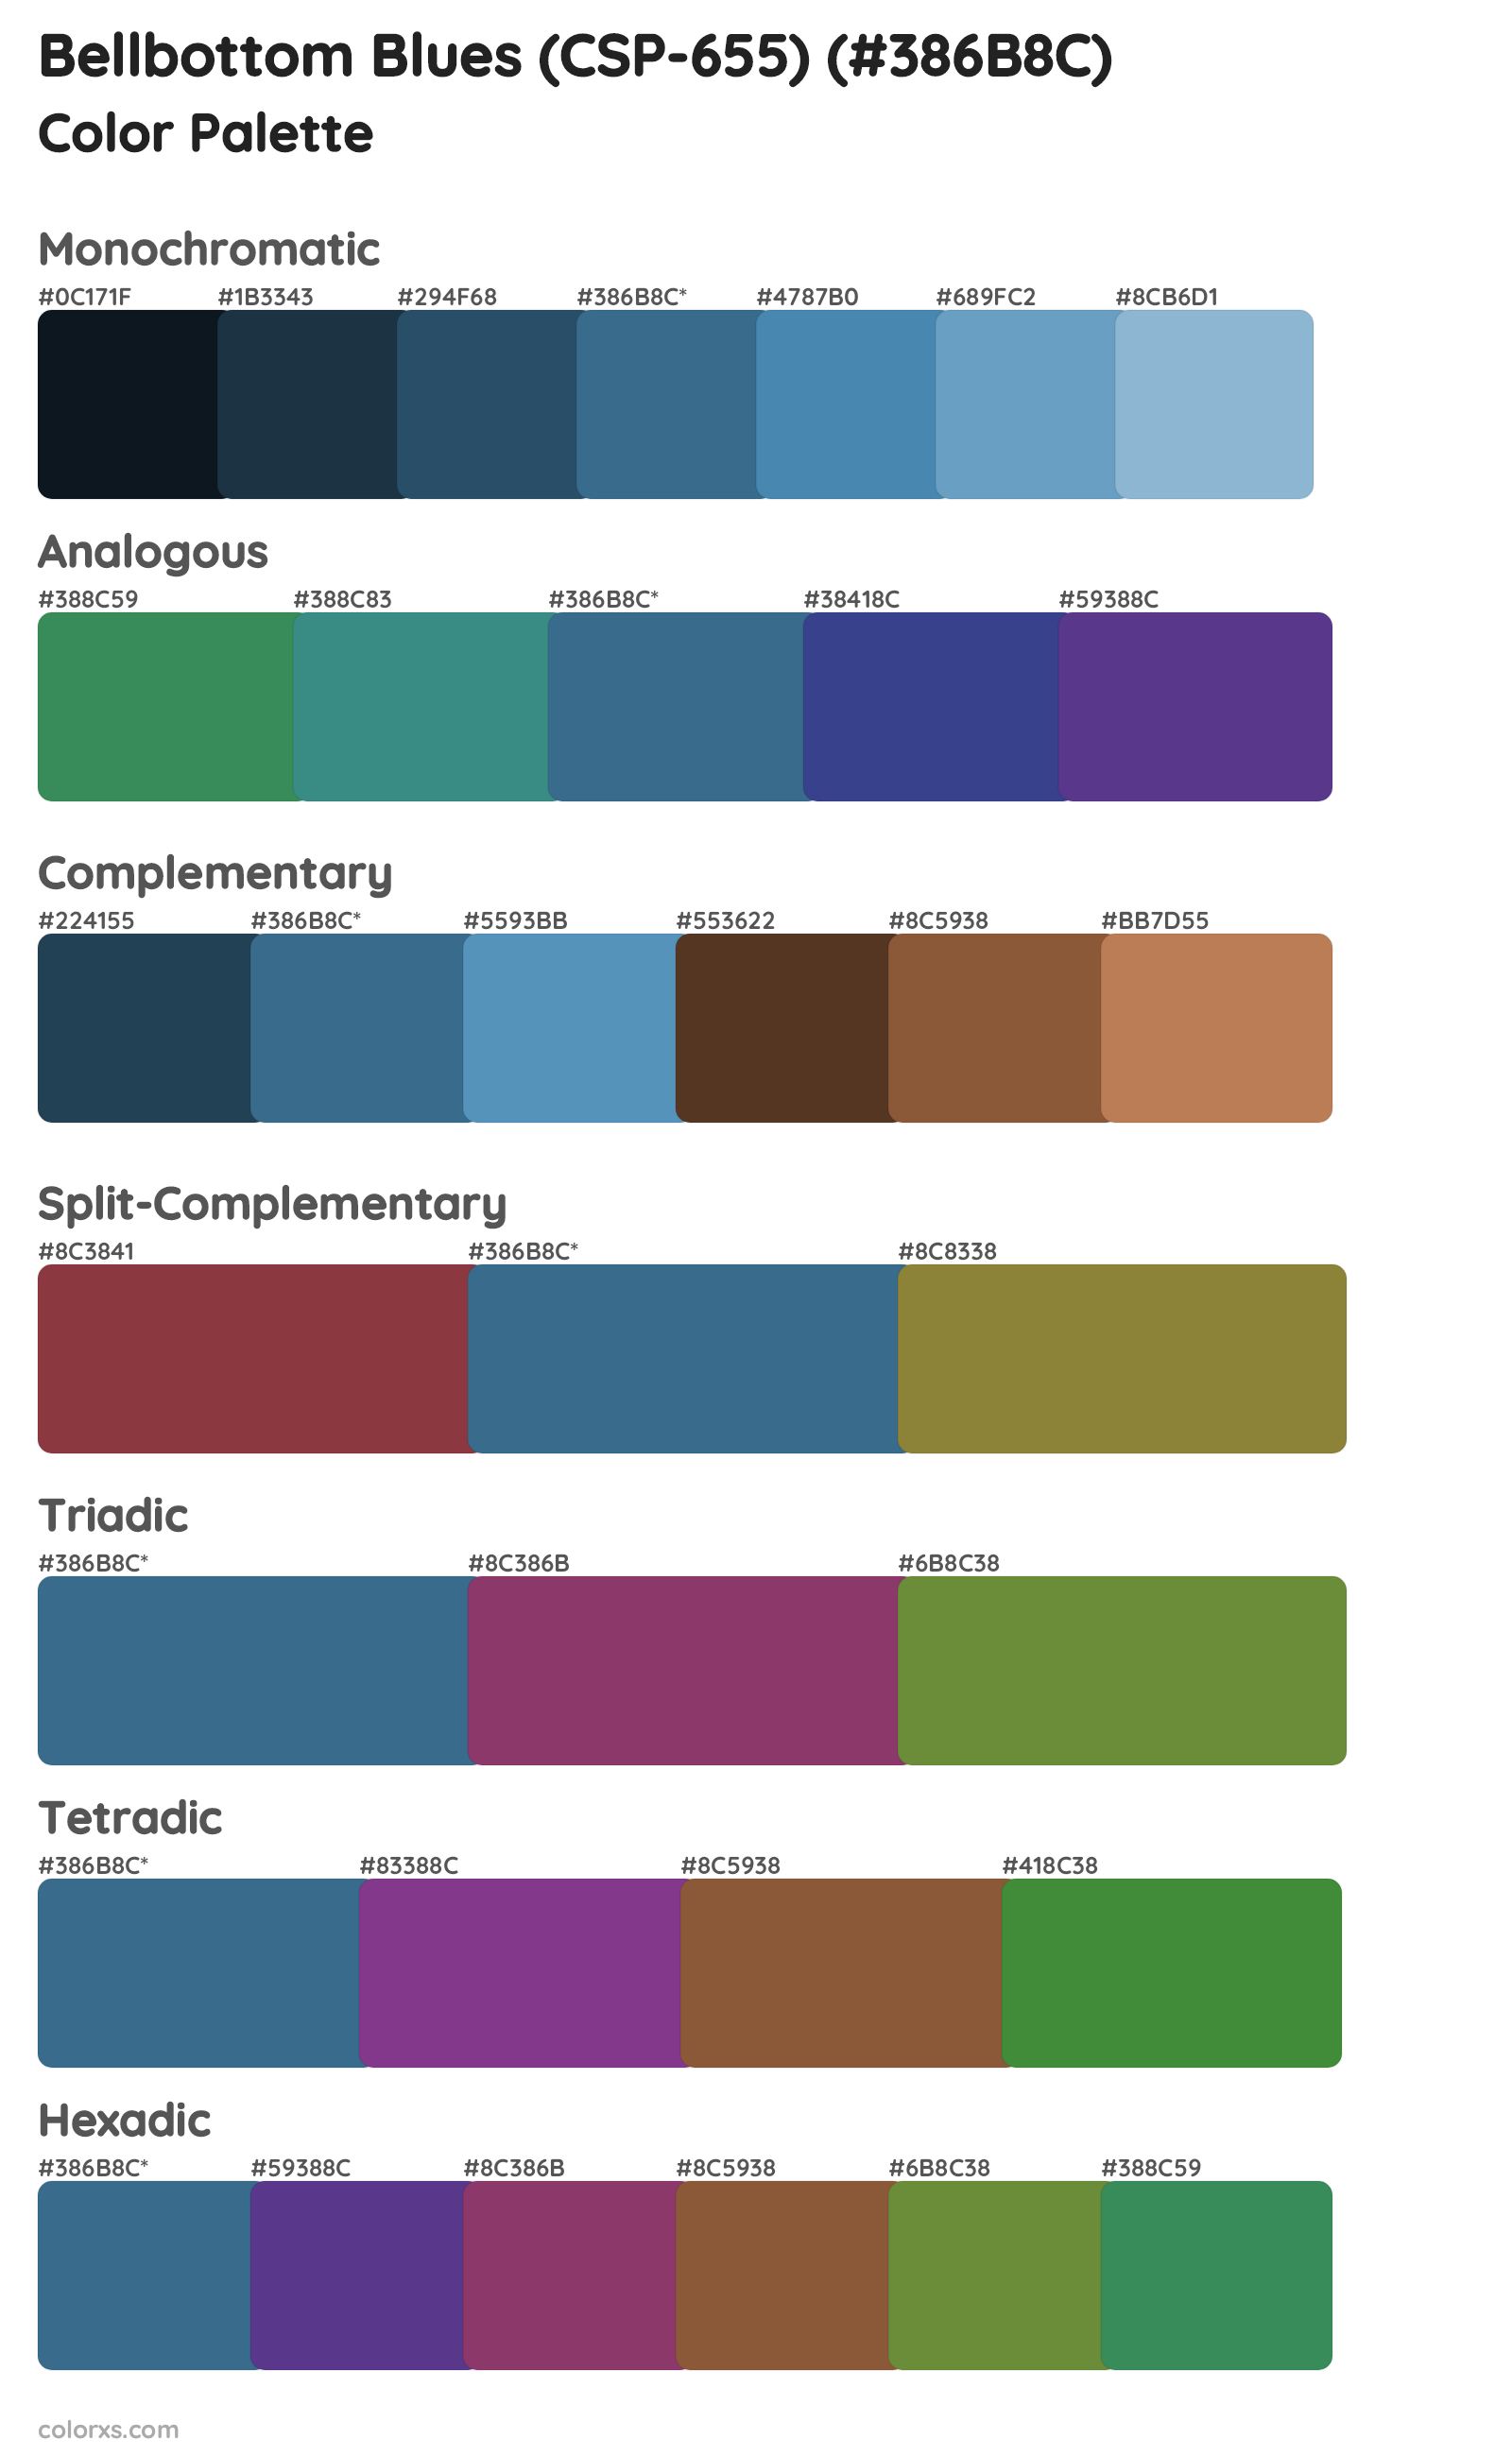 Bellbottom Blues (CSP-655) Color Scheme Palettes